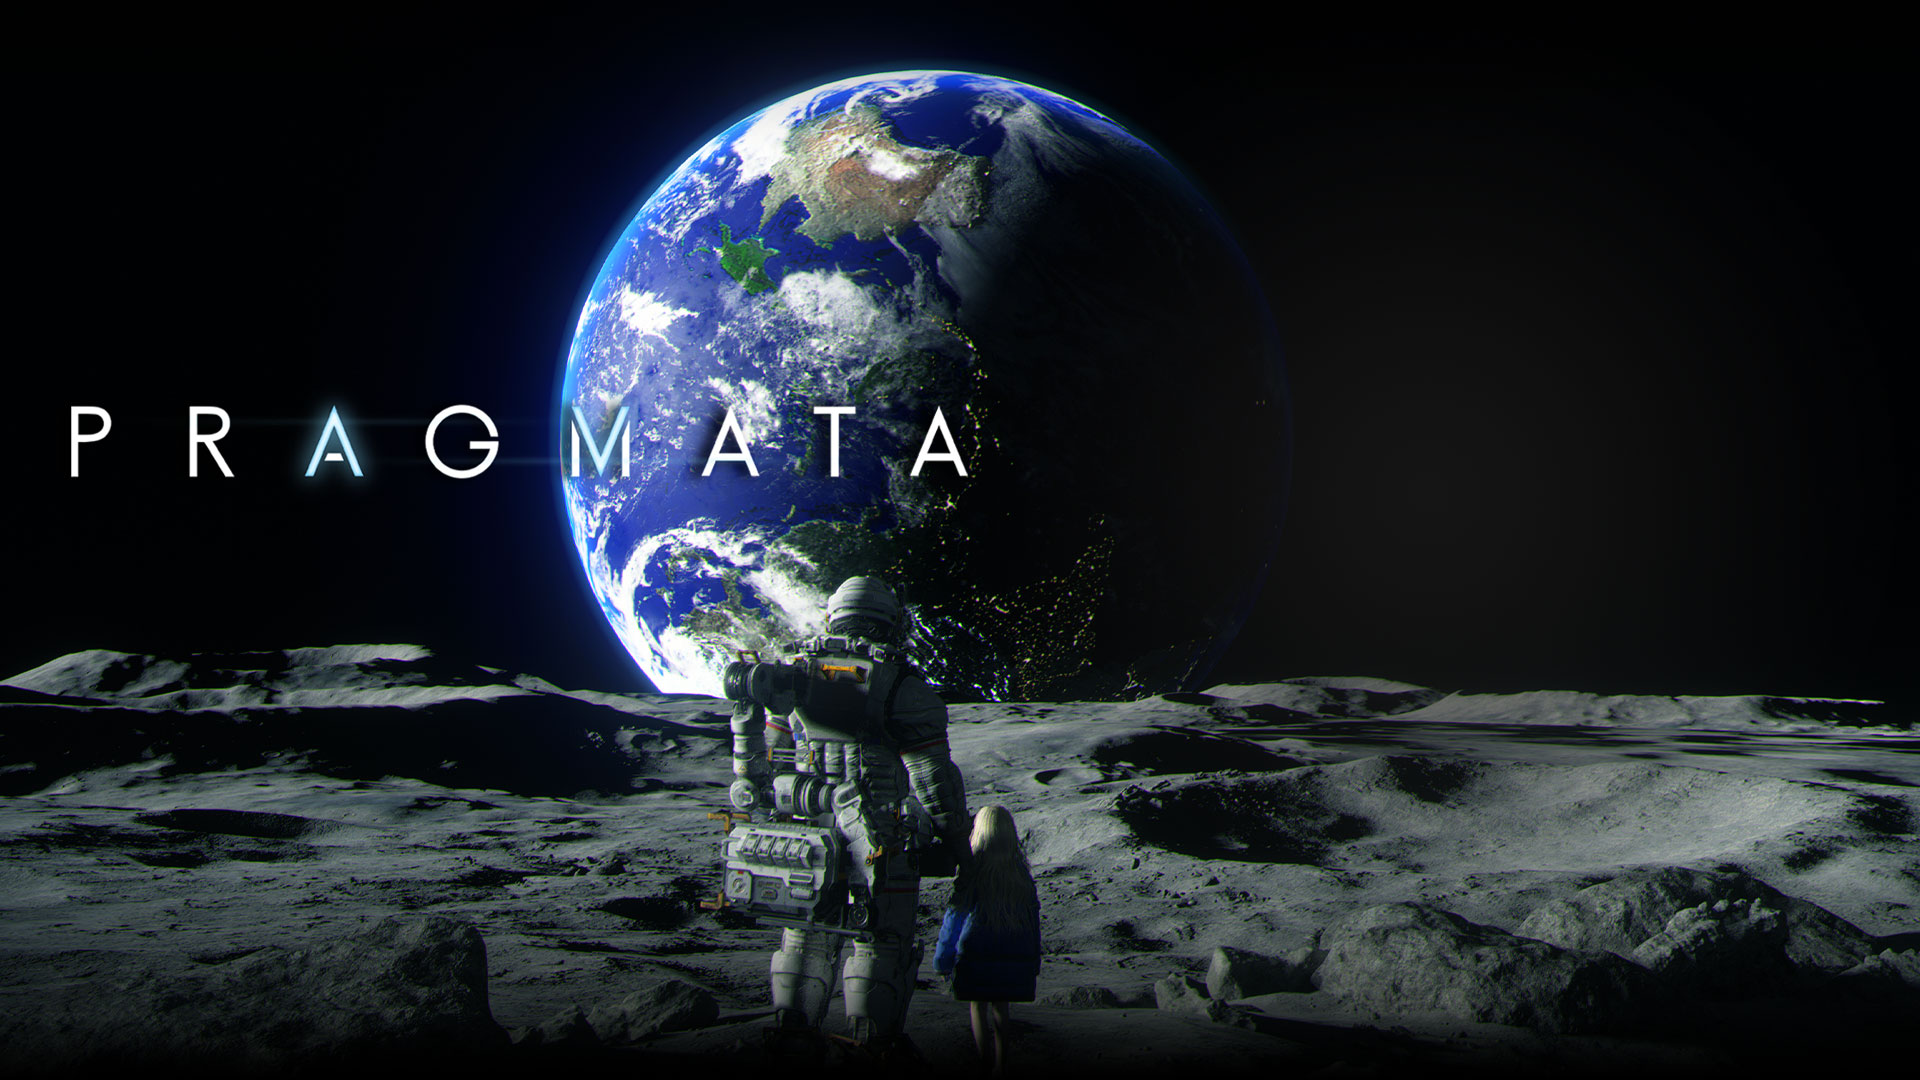 Pragmata, Een astronaut en een jong meisje kijken naar de aarde terwijl ze samen op de maan staan